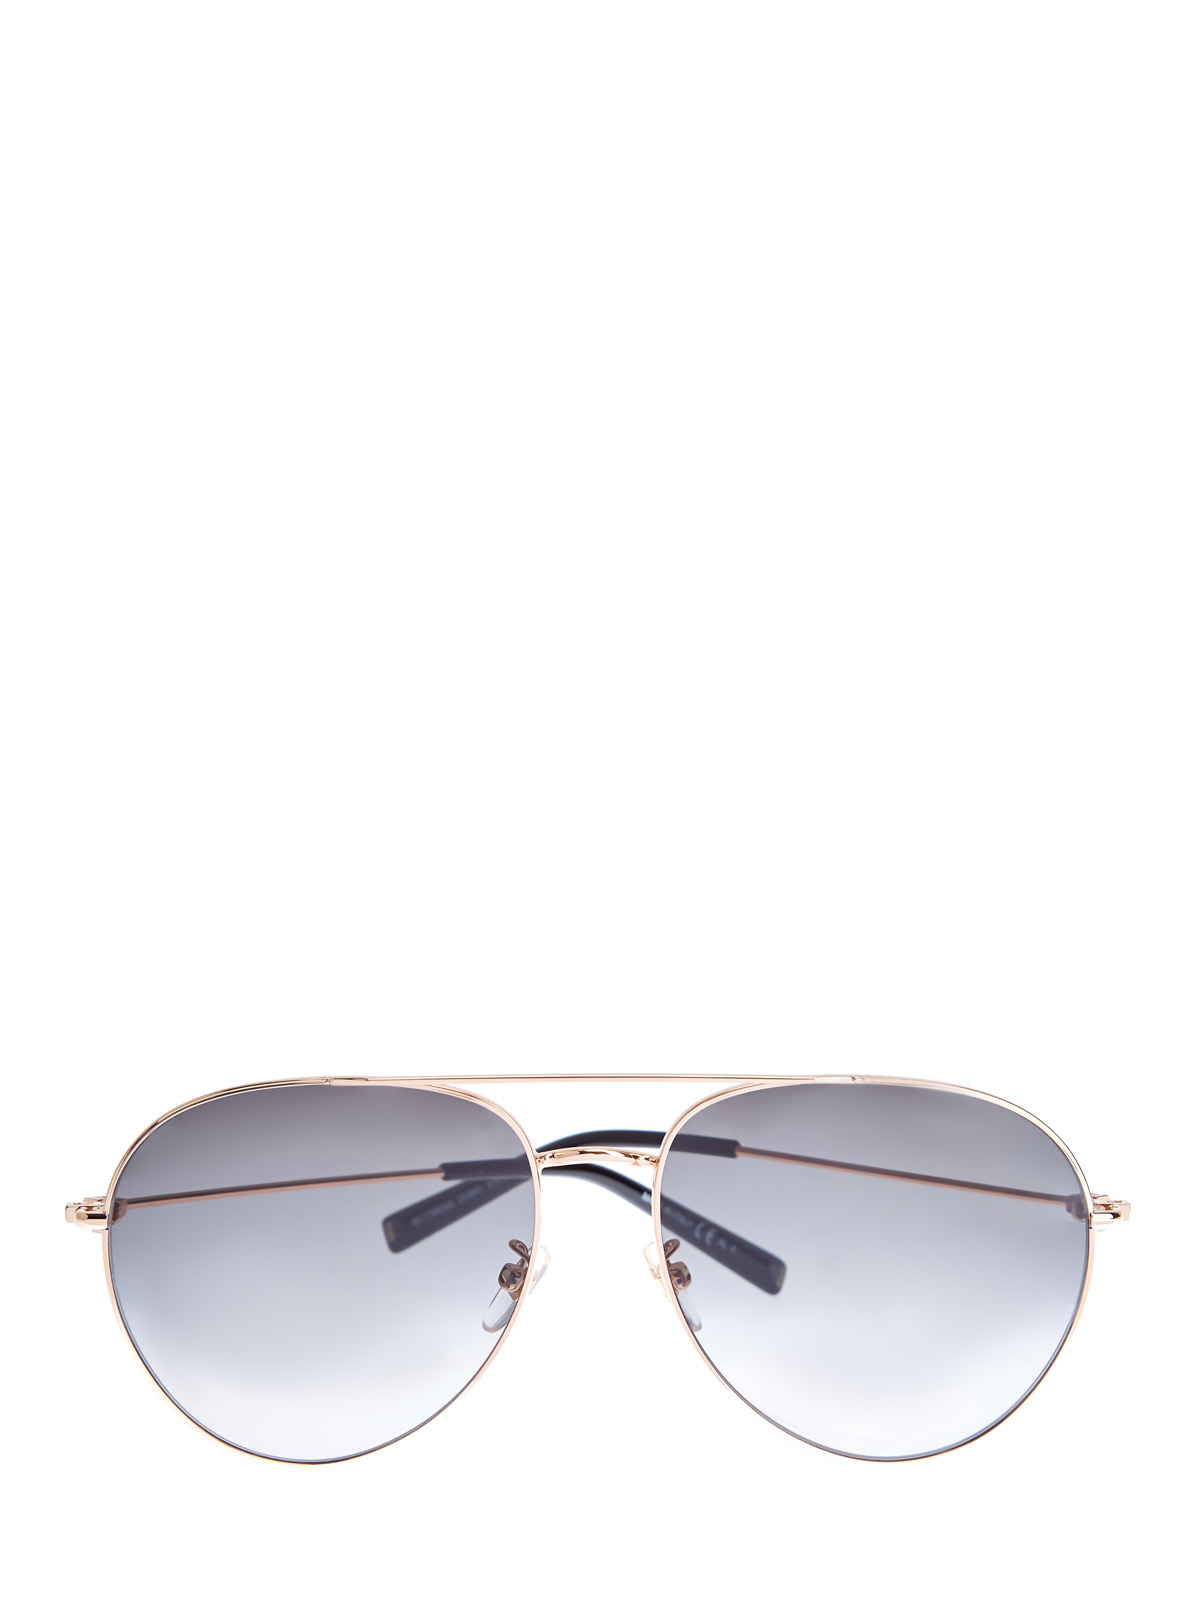 Очки в тонкой металлической оправе «авиатор» GIVENCHY (sunglasses), цвет черный, размер S;M;L